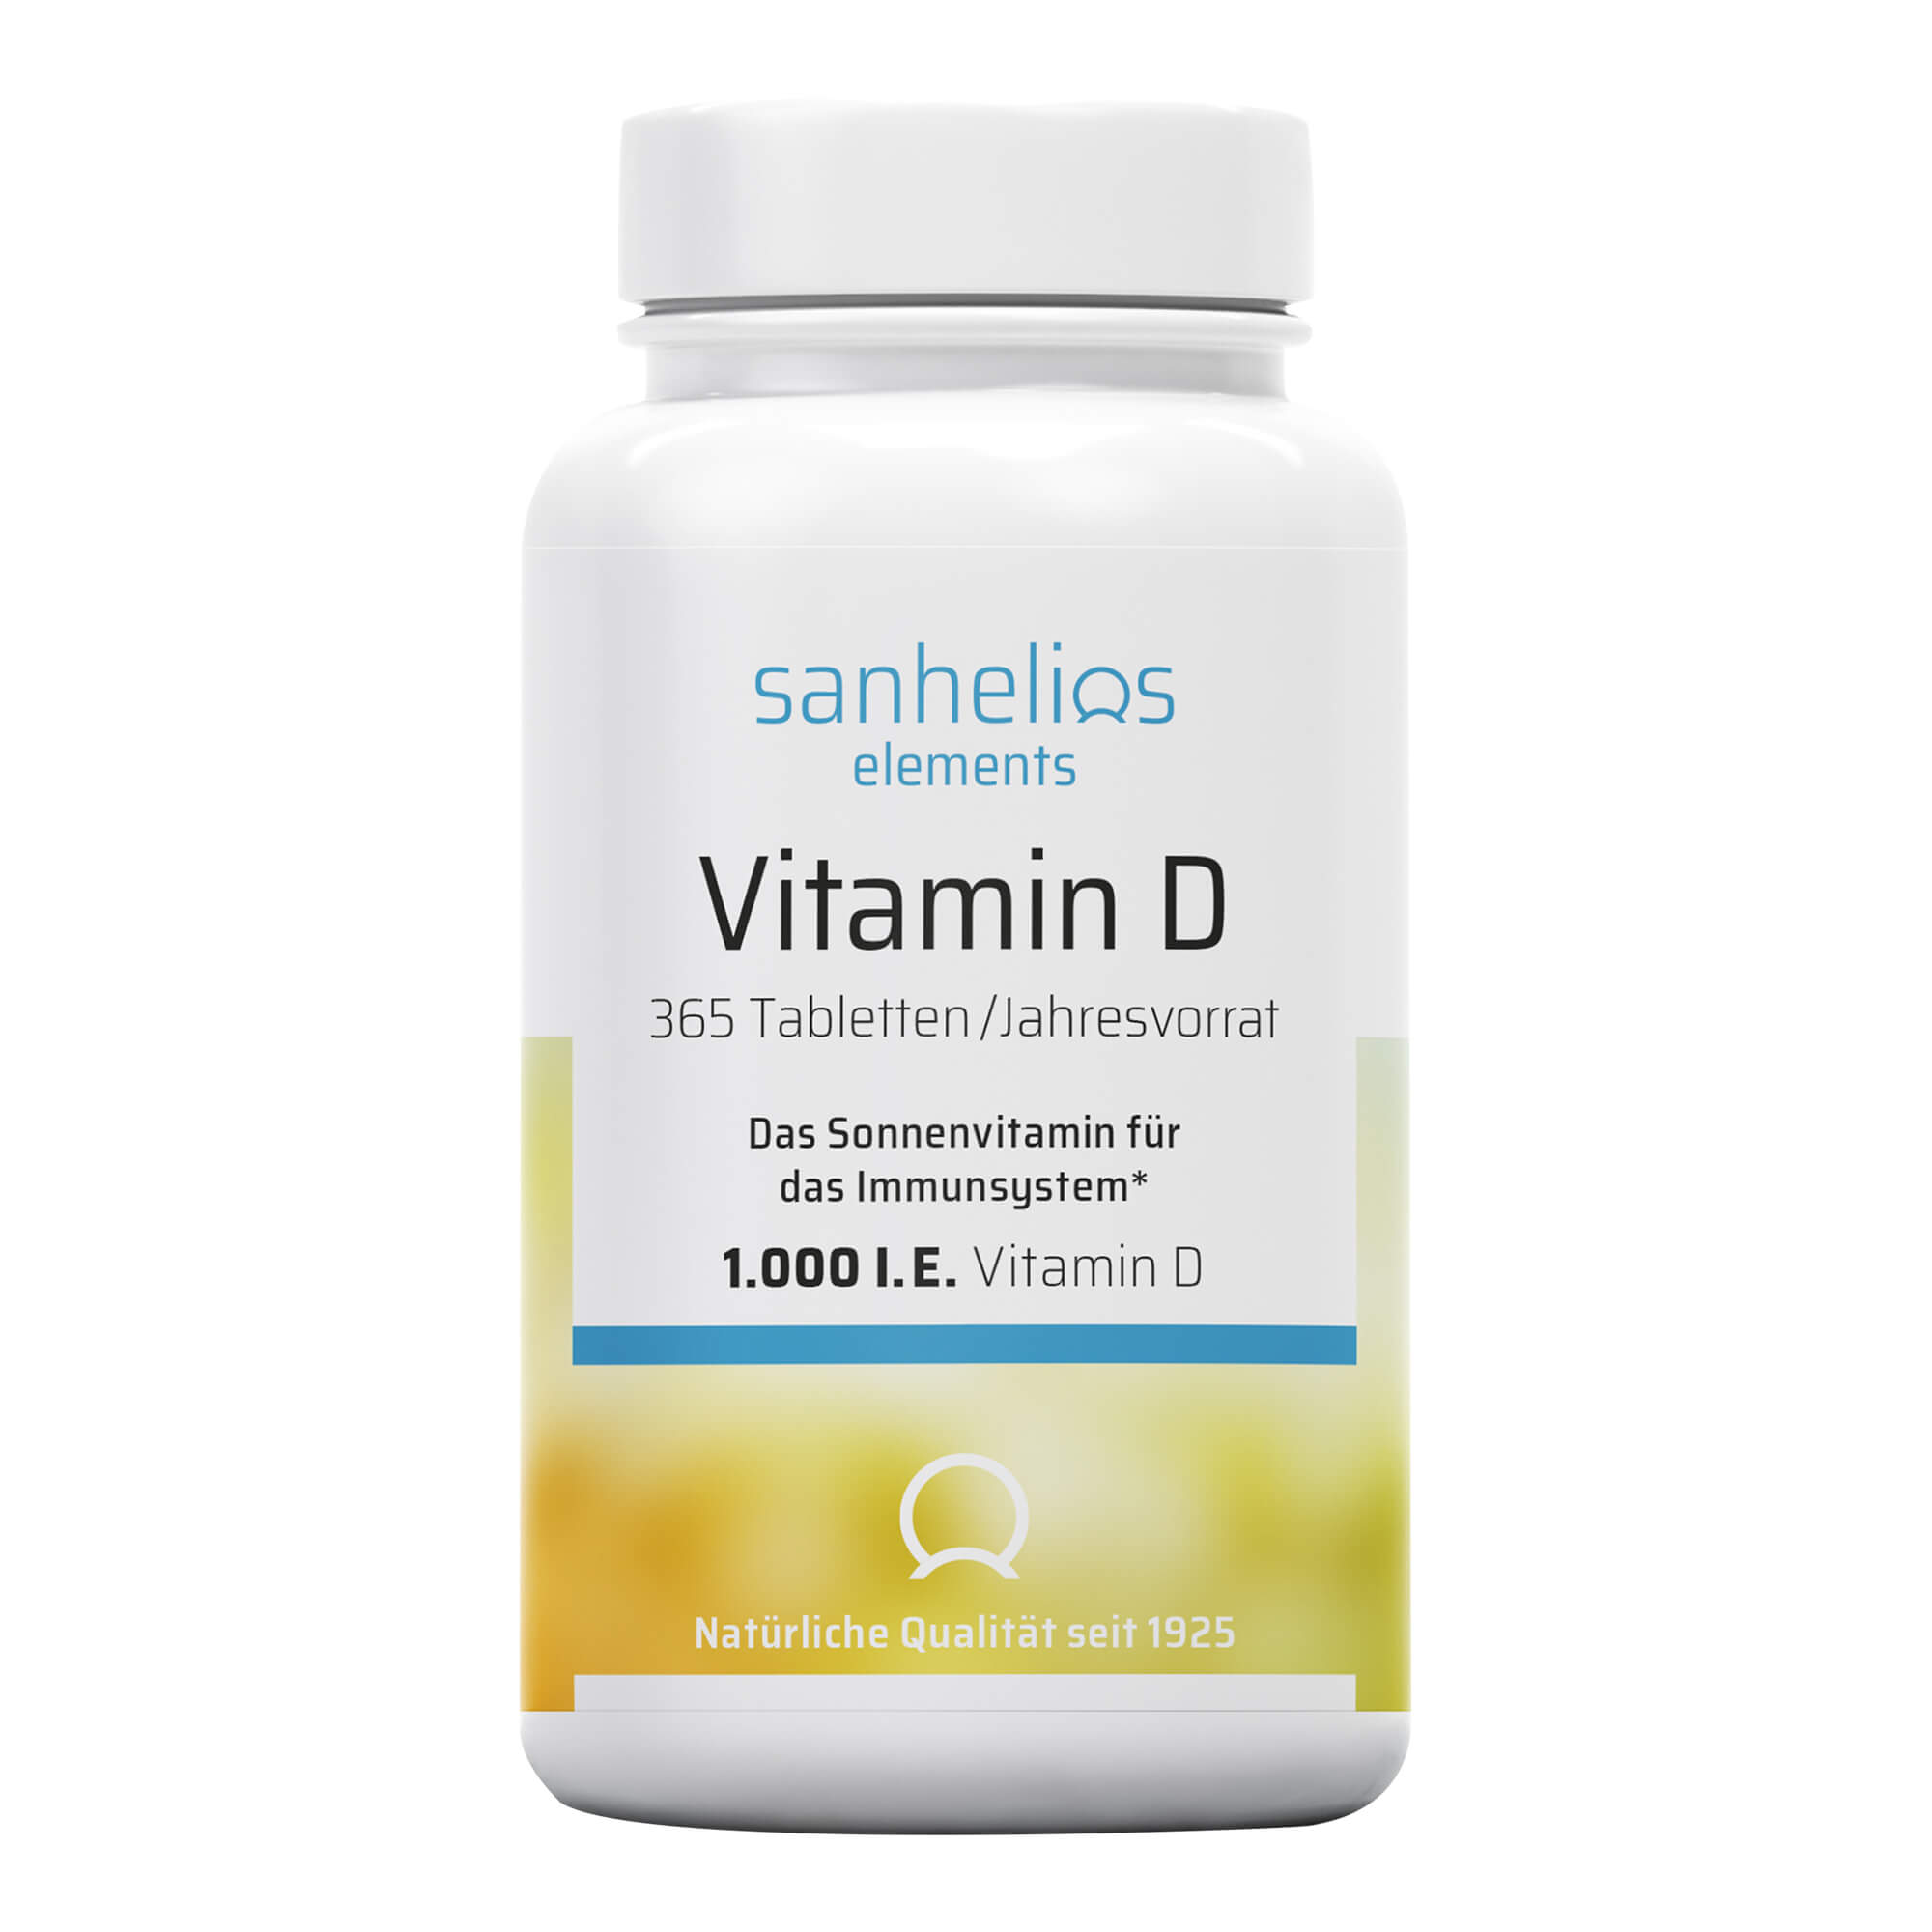 Nahrungsergänzungsmittel mit Vitamin D. Zur Unterstützung des Immunsystems. Jahresvorrat.